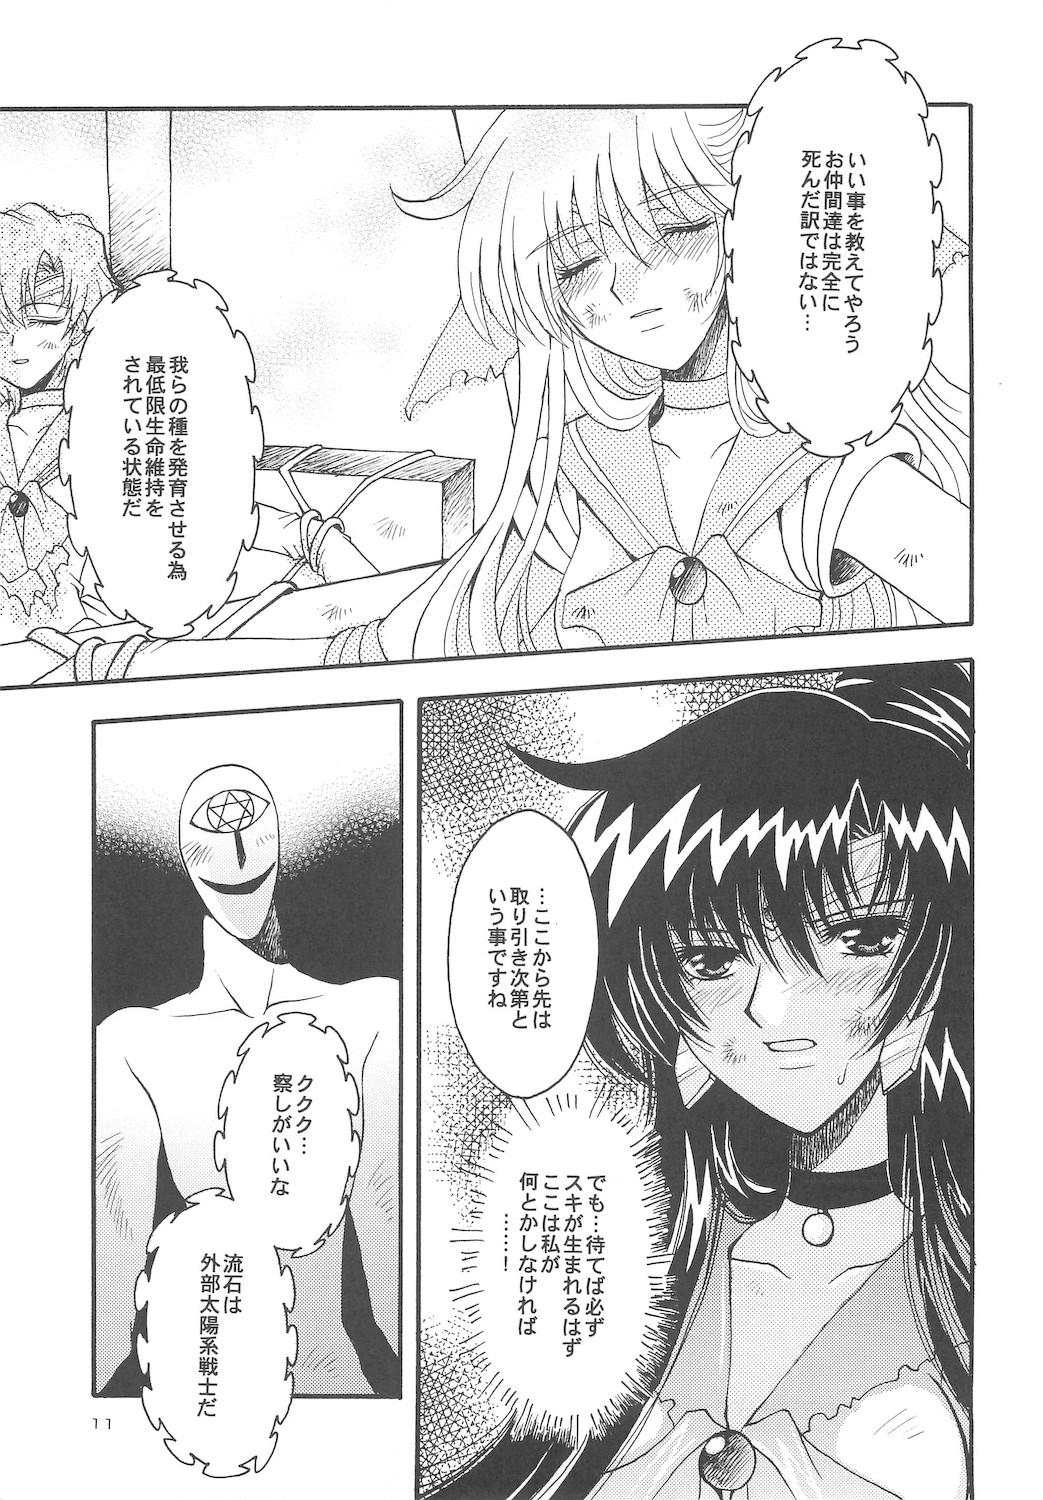 Retro Owaru Sekai dai 4 shou - Sailor moon Publico - Page 11